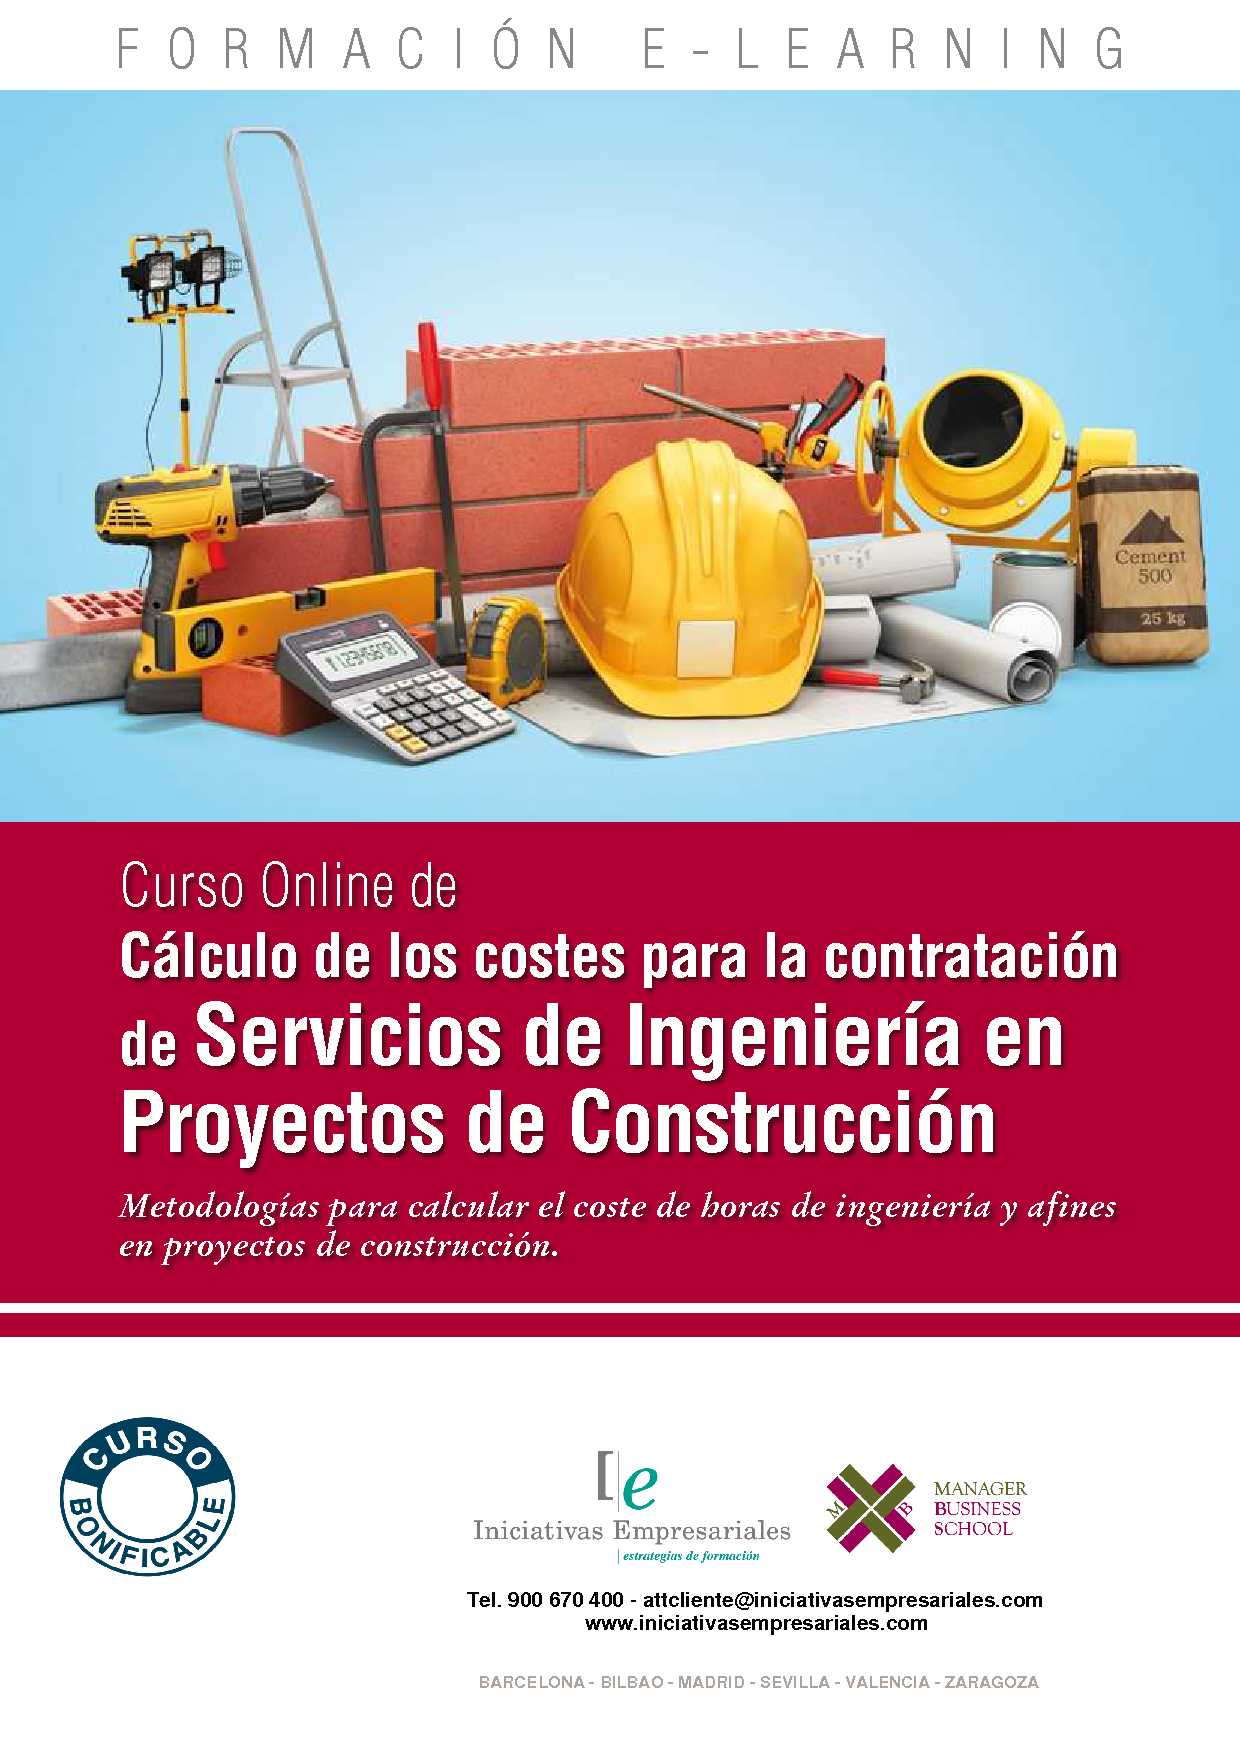 Cálculo de los costes para la contratación de Servicios de Ingeniería en Proyectos de Construcción